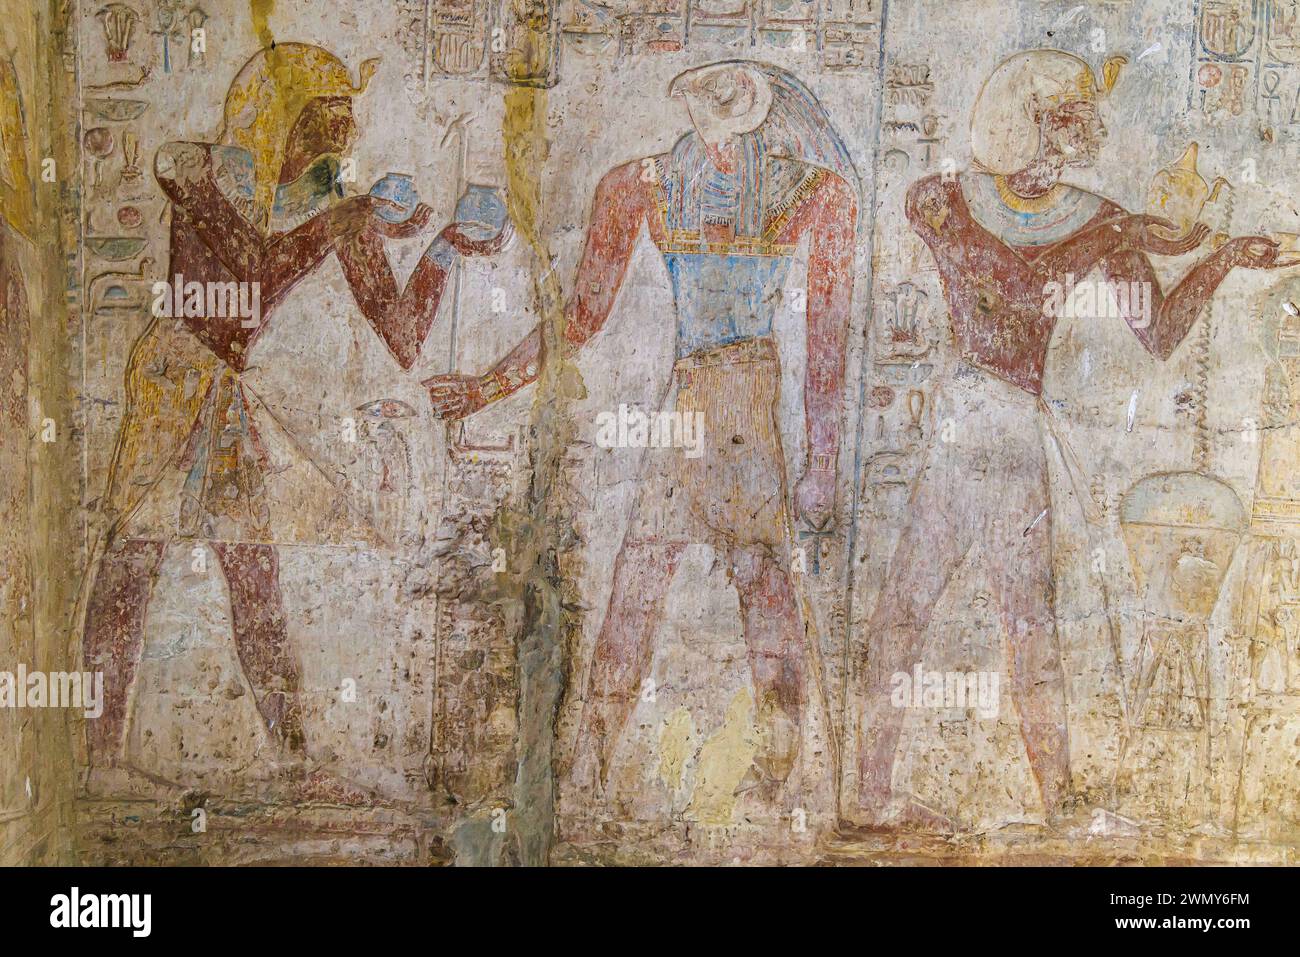 Ägypten, Assuan, nubische Denkmäler von Abu Simbel bis Philae, die von der UNESCO zum Weltkulturerbe erklärt wurden, Tempel Beit el Wally, gemalt mit niedrigem Relief an einer Wand Stockfoto